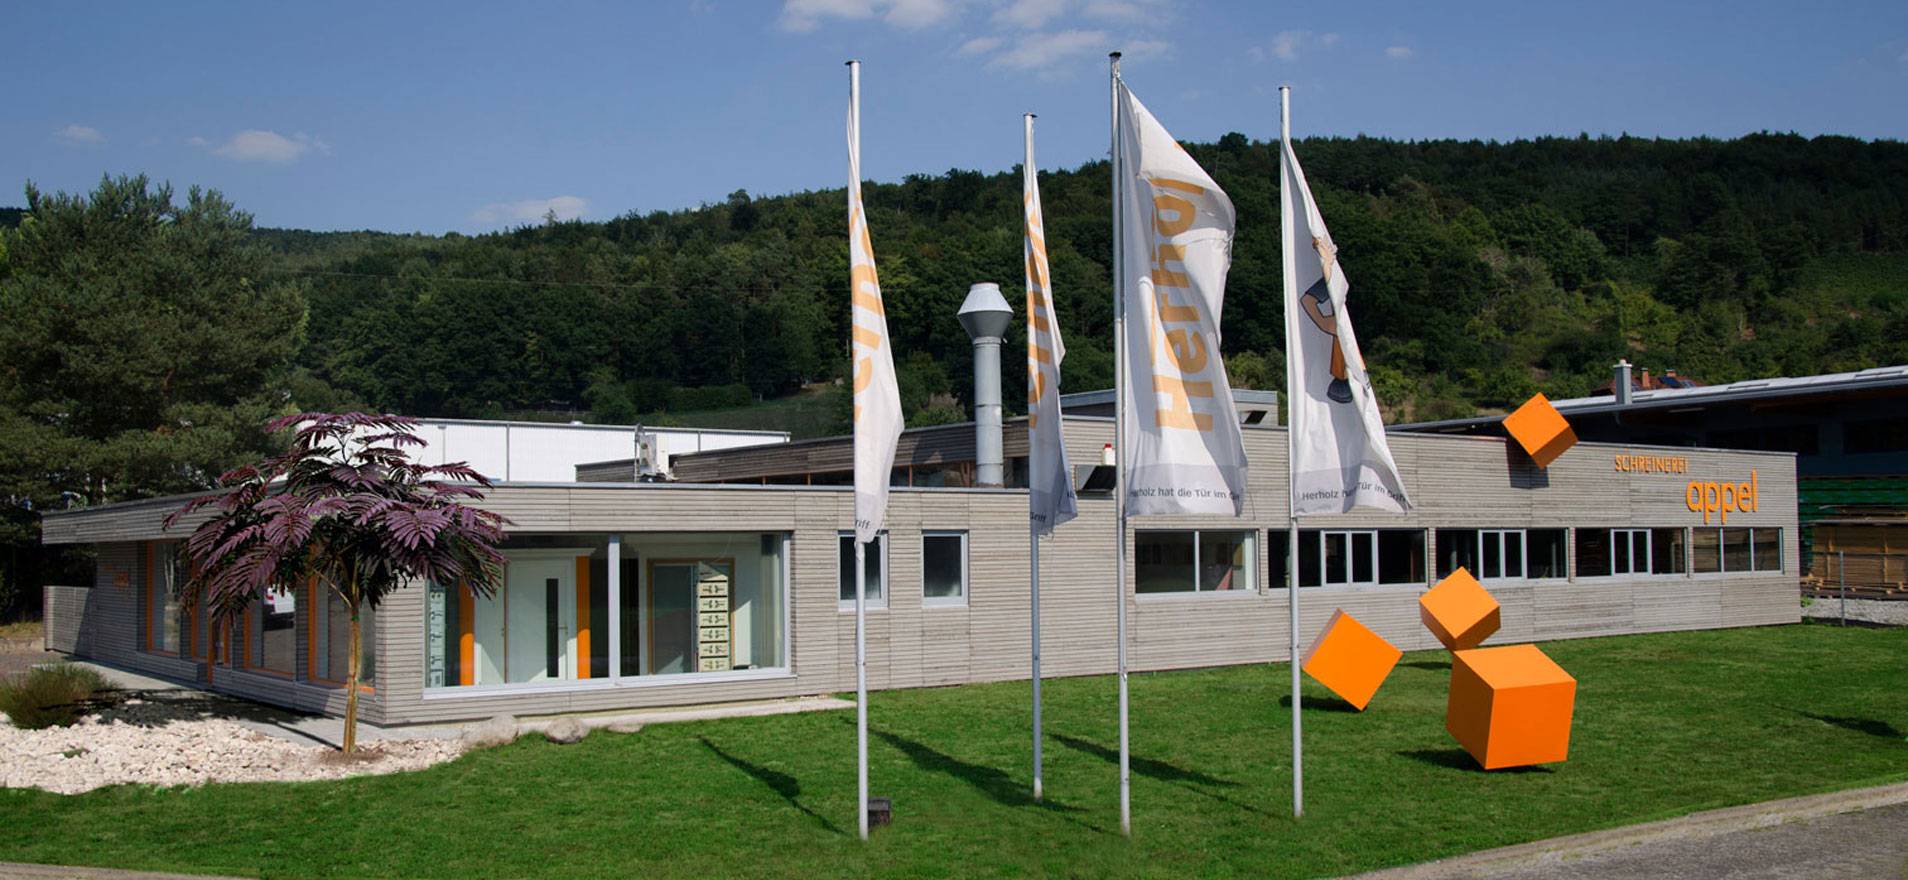 Alois Appel GmbH Werksgebäude